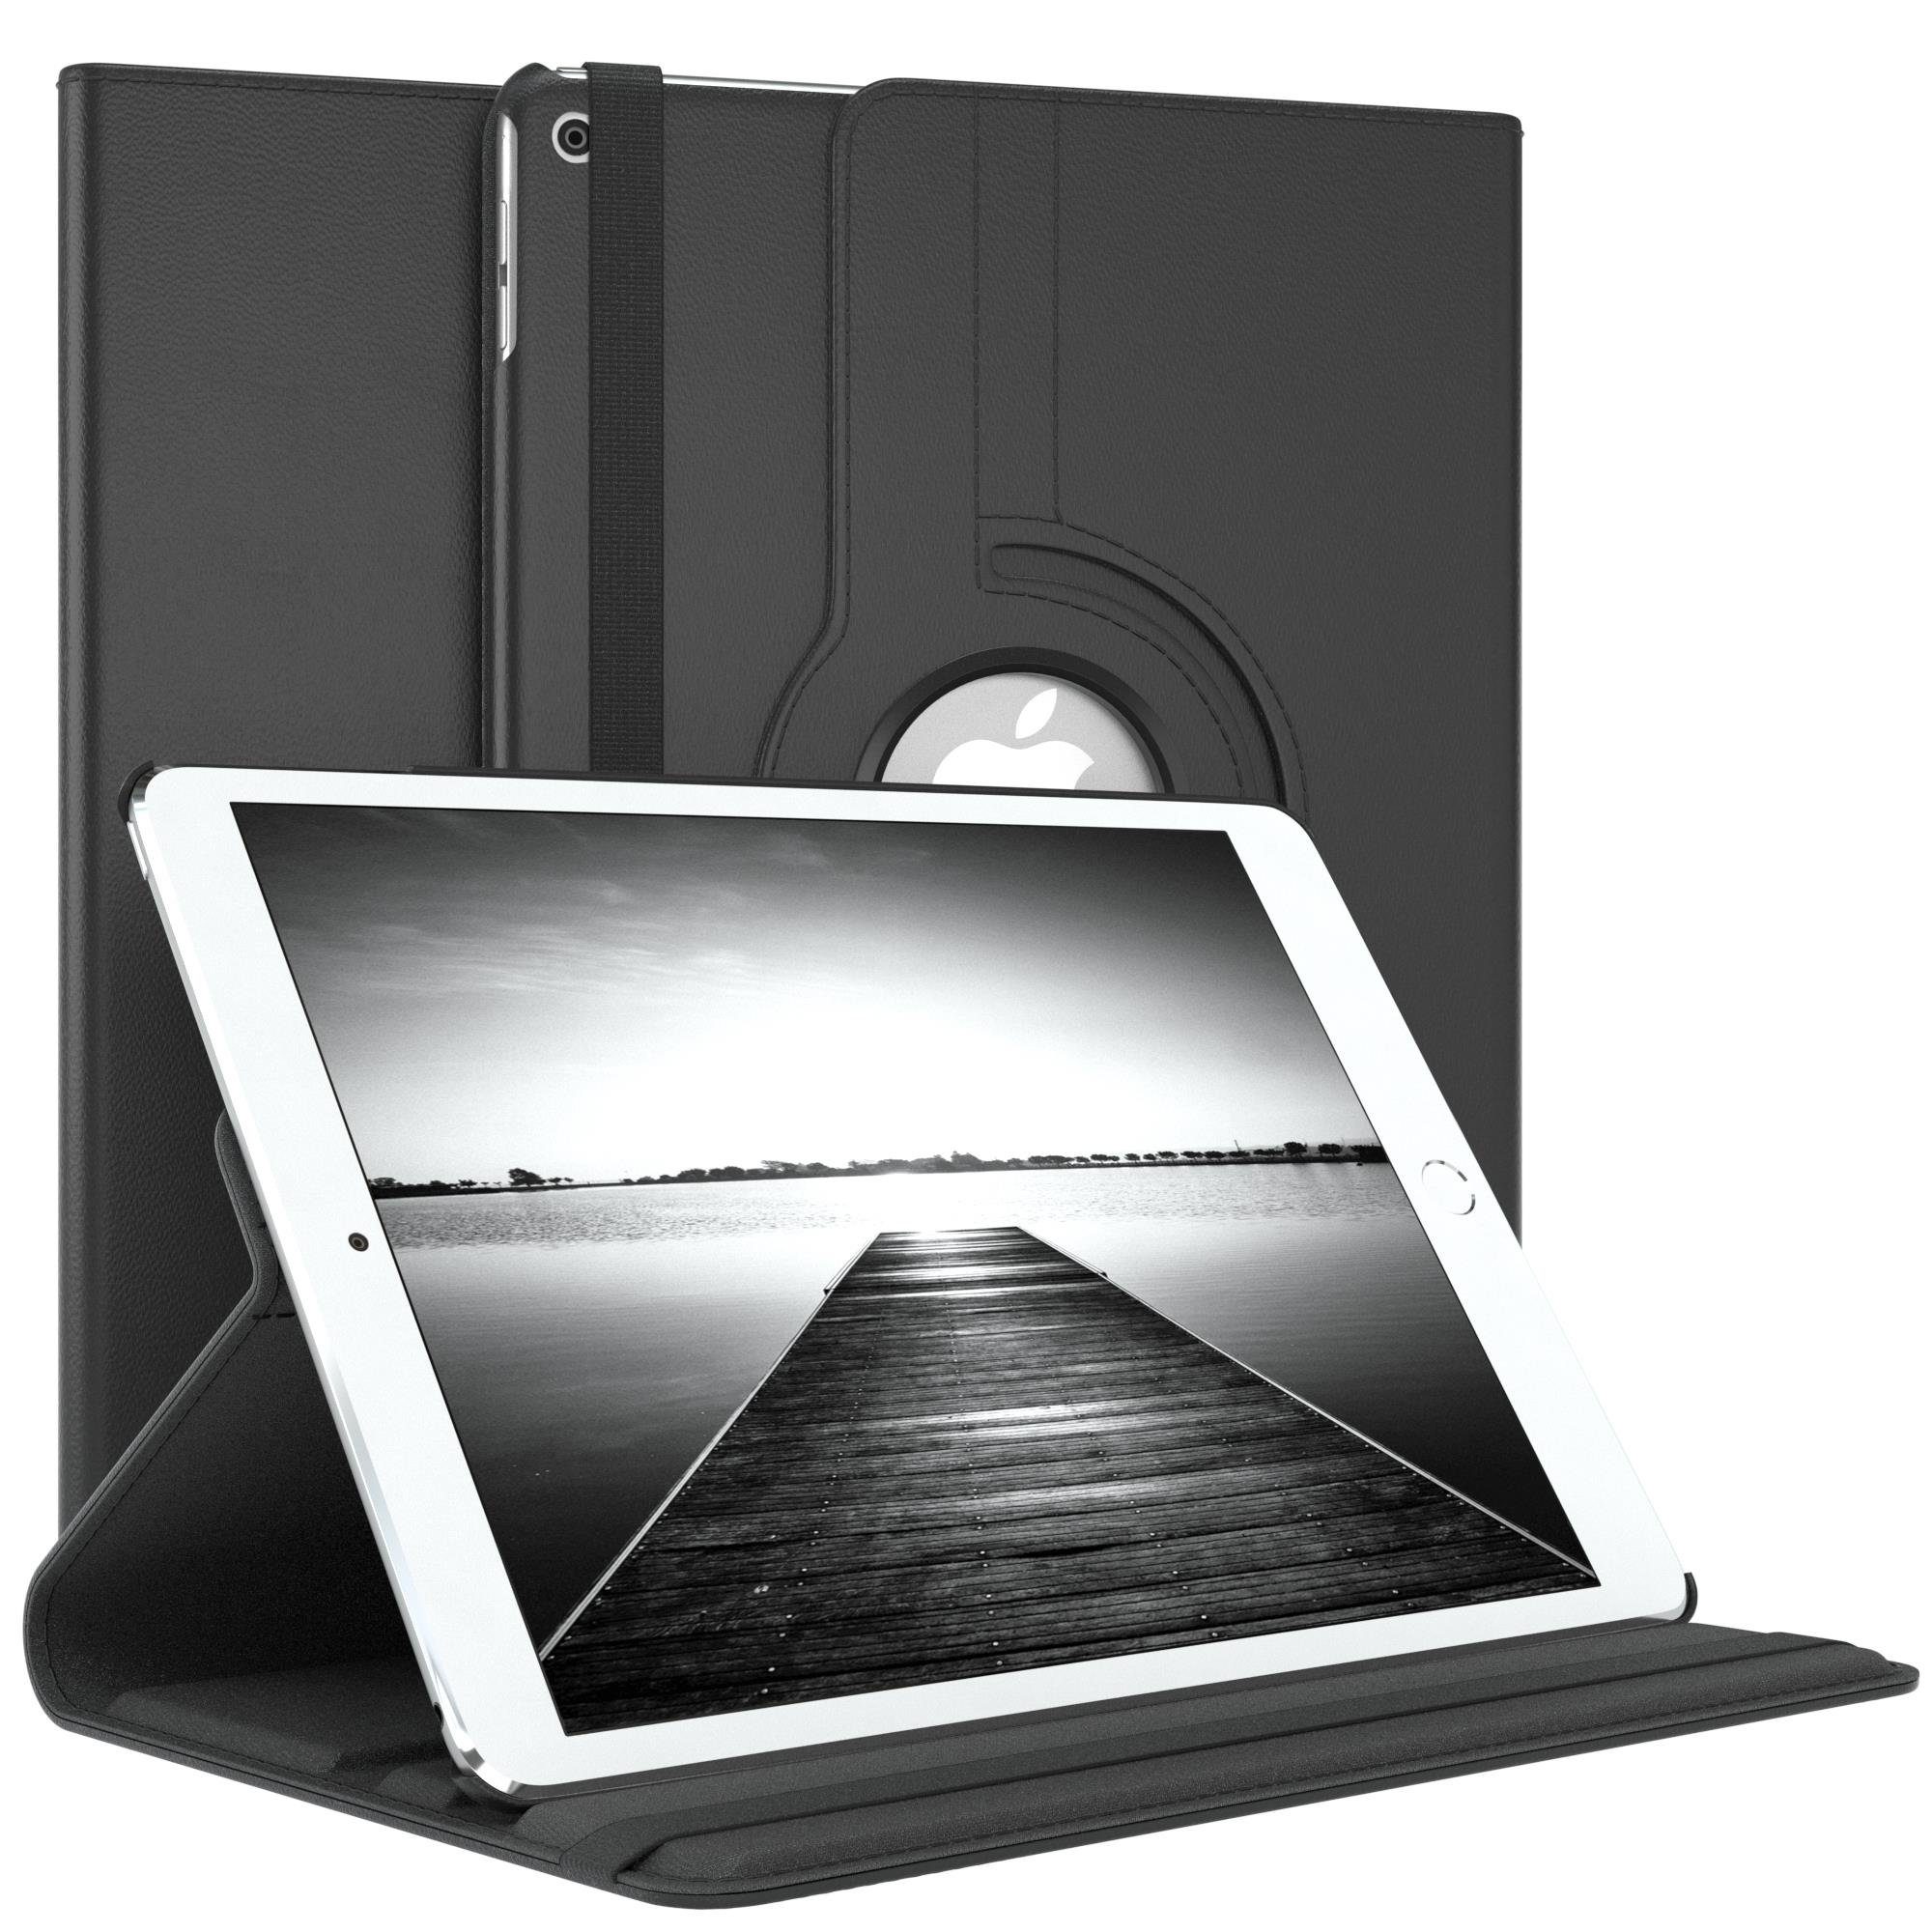 EAZY CASE Tablet-Hülle Rotation Case für Apple iPad Air 2 9,7 Zoll, Hülle 360° drehbar mit Standfunktion Etui Anti-Kratz Tasche Schwarz